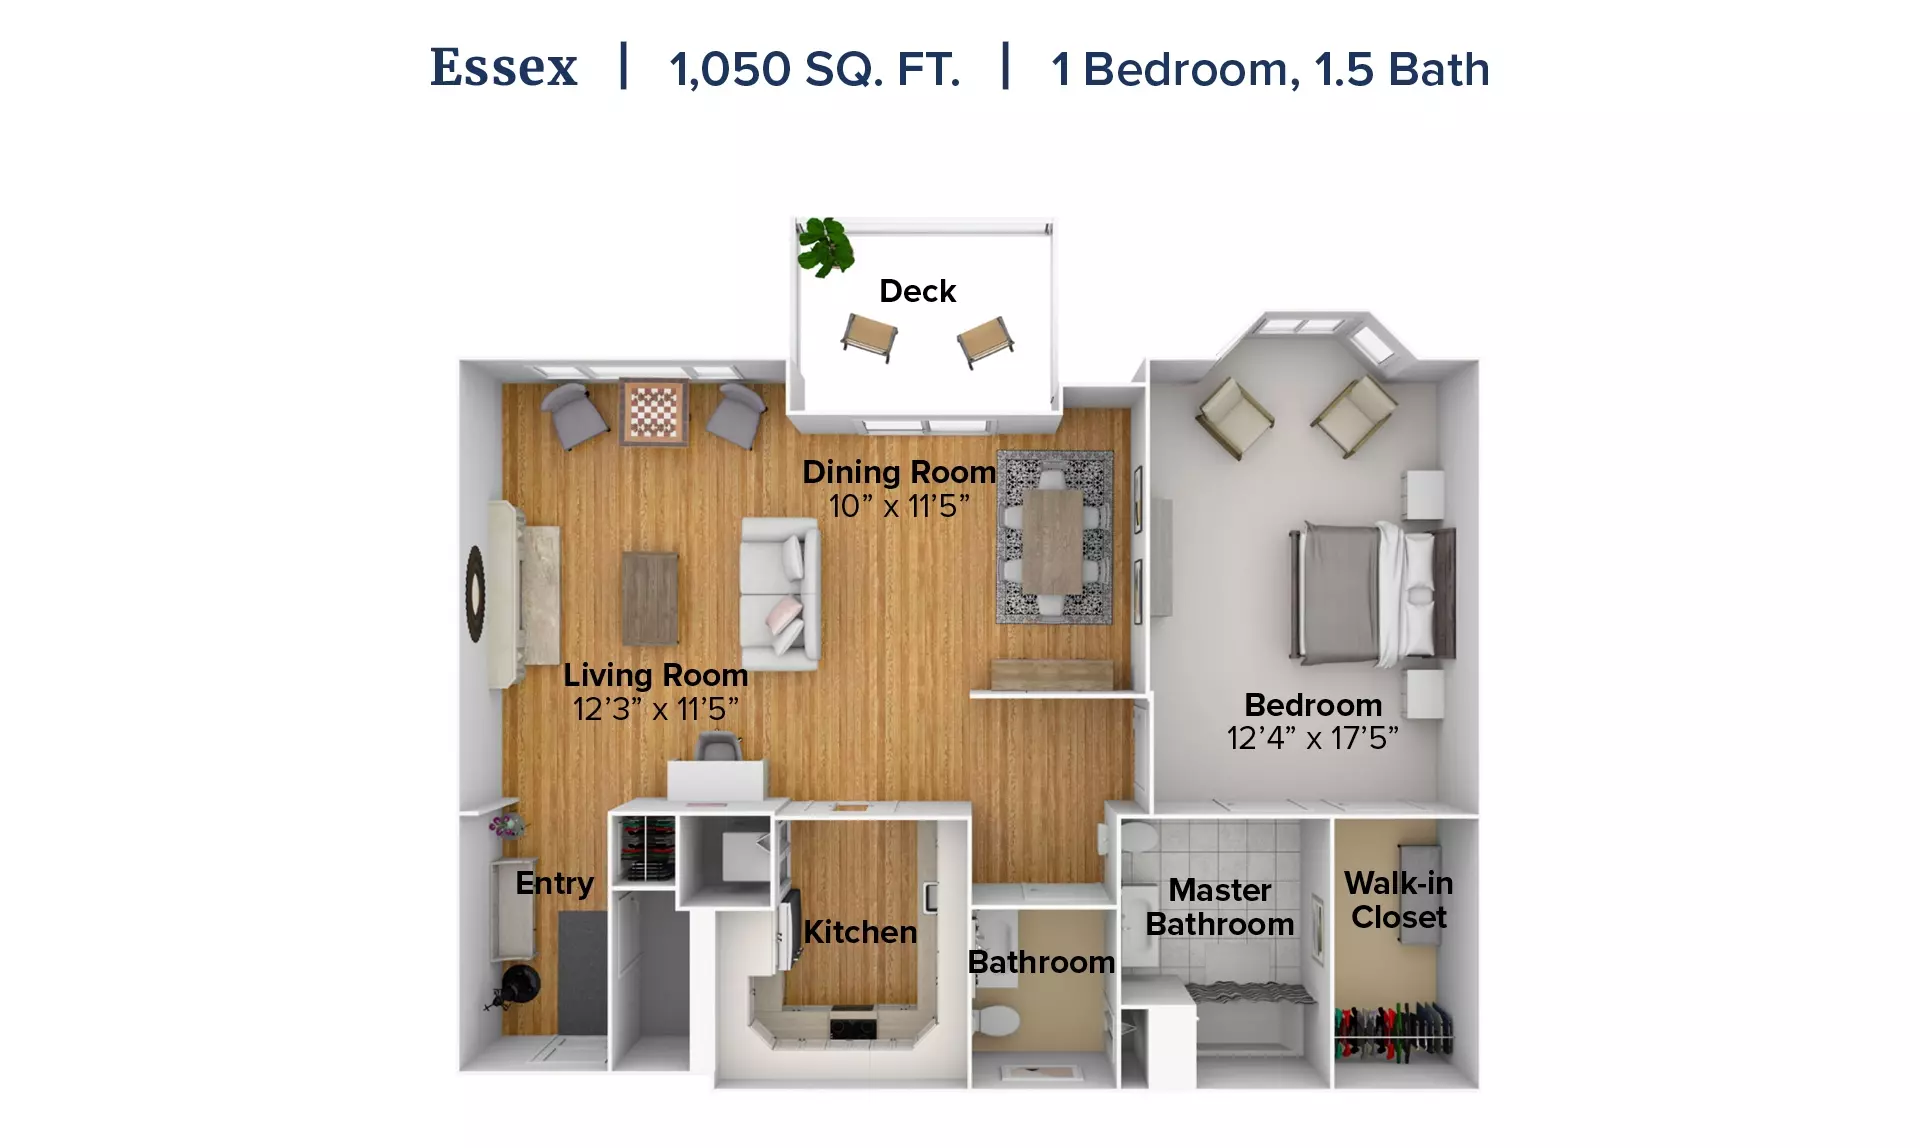 Essex floor plan